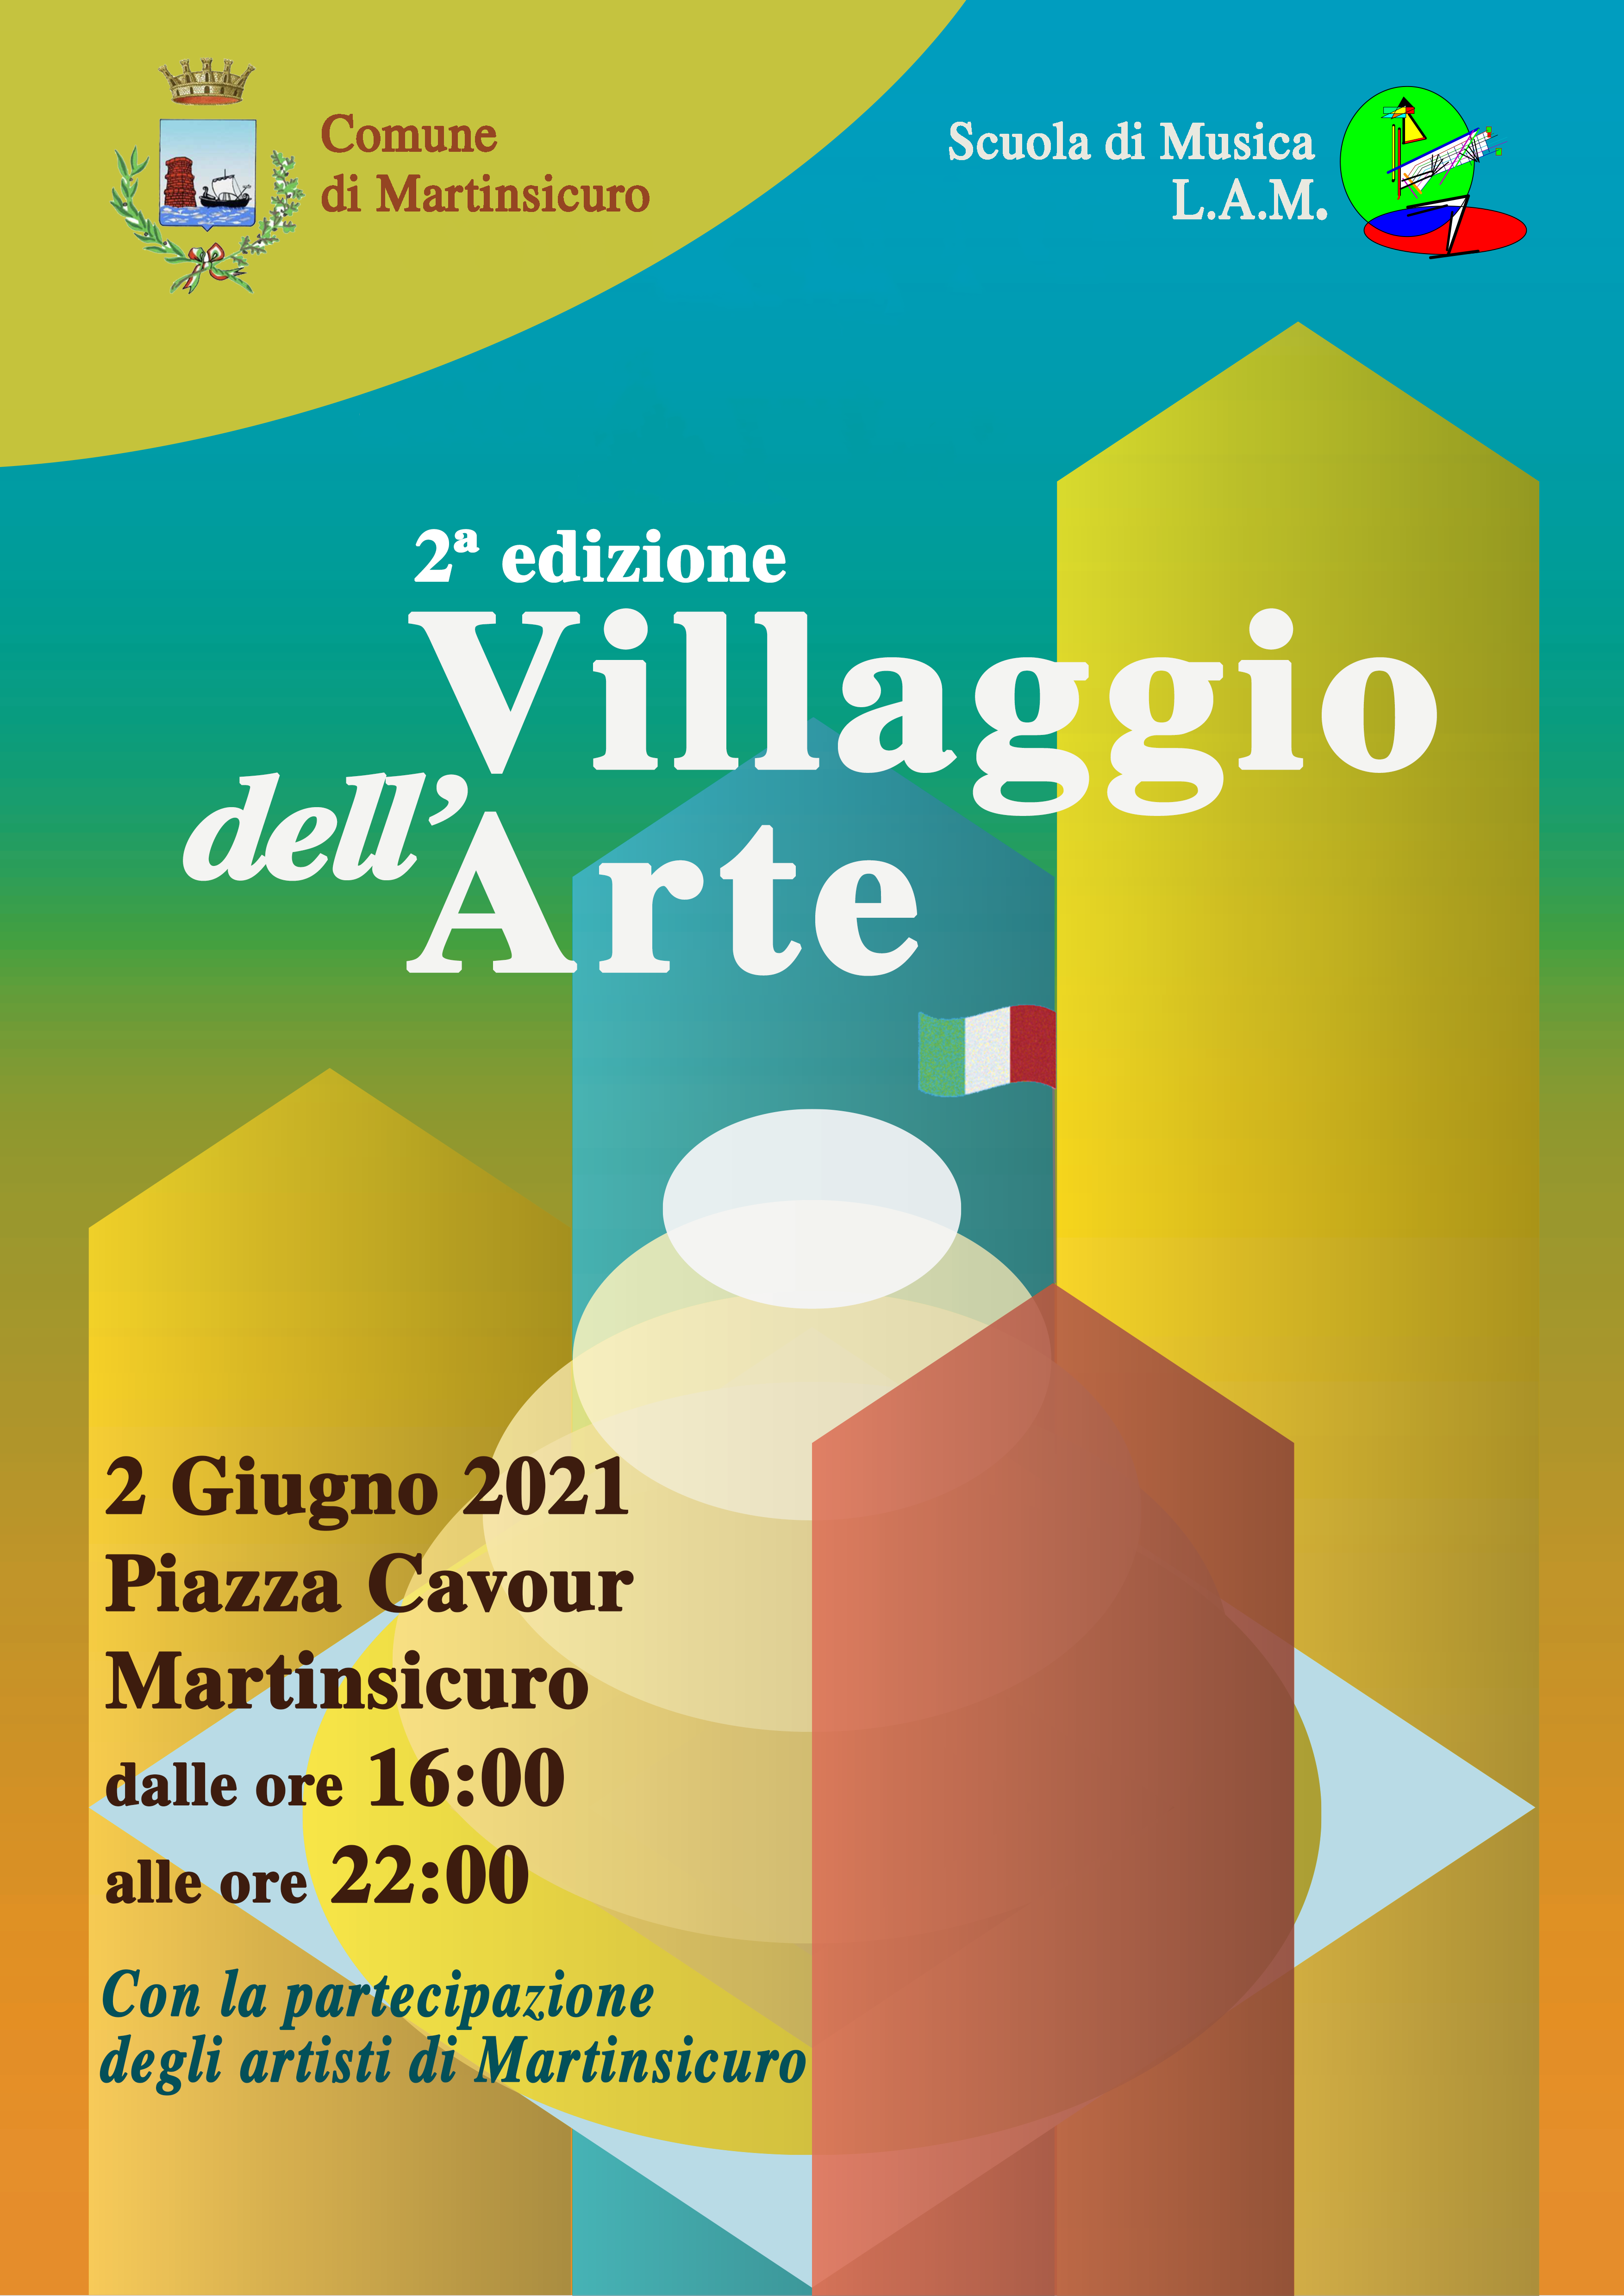 Martinsicuro. Arriva la 2° edizione di “Villaggio in Arte”: esibizione di artisti locali